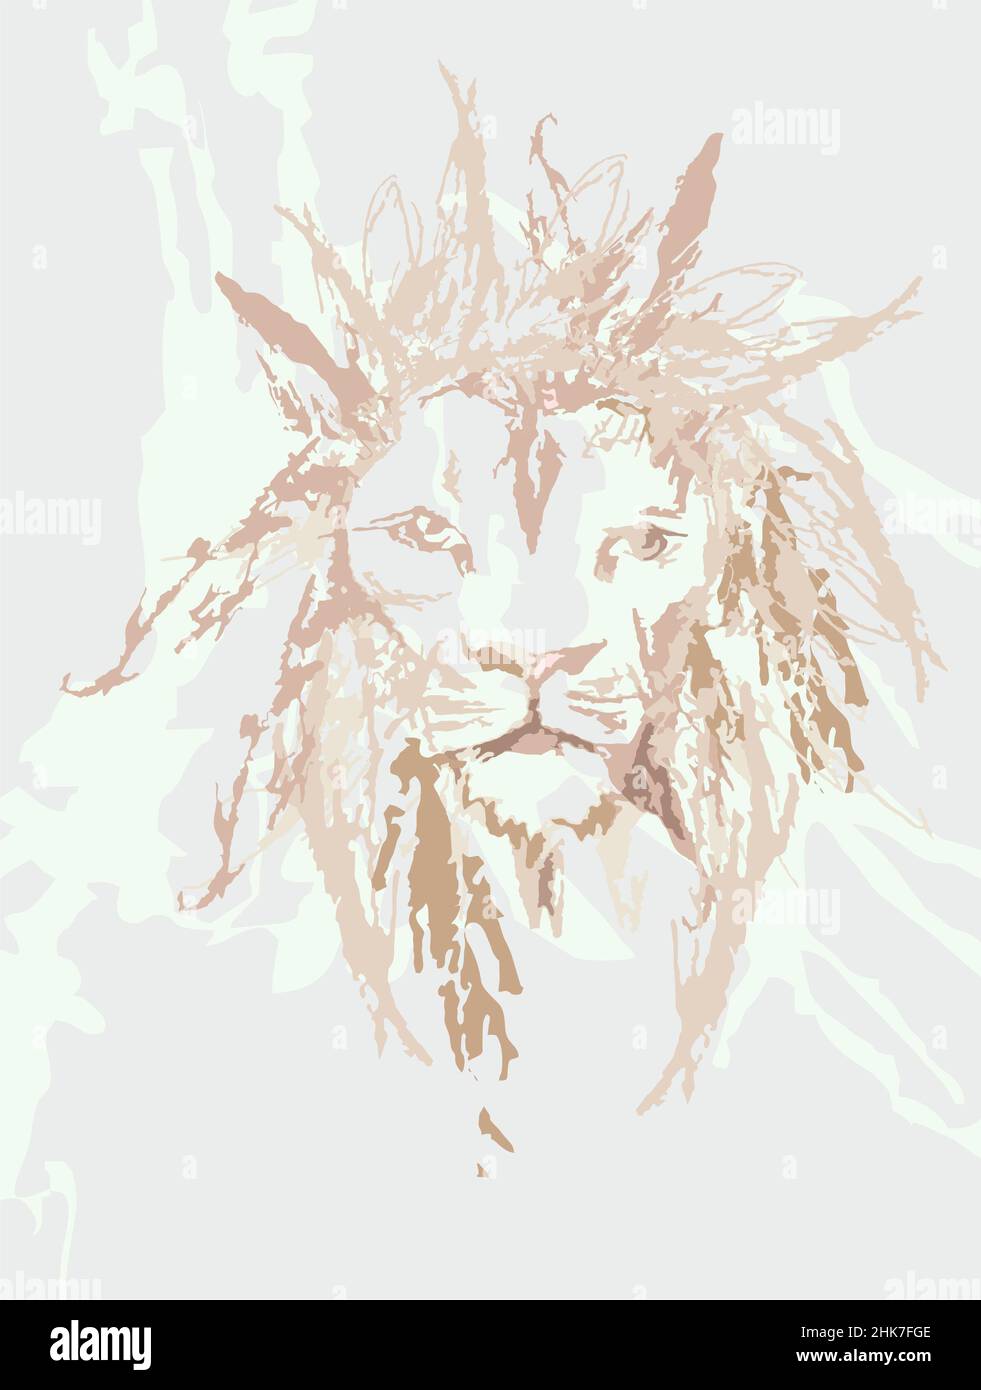 Croquis d'une tête de lion sur un fond clair pour les affiches ou le papier peint.Tête de lion en tons pastel pour les produits en tissu, les imprimés, les textiles et la mode Banque D'Images